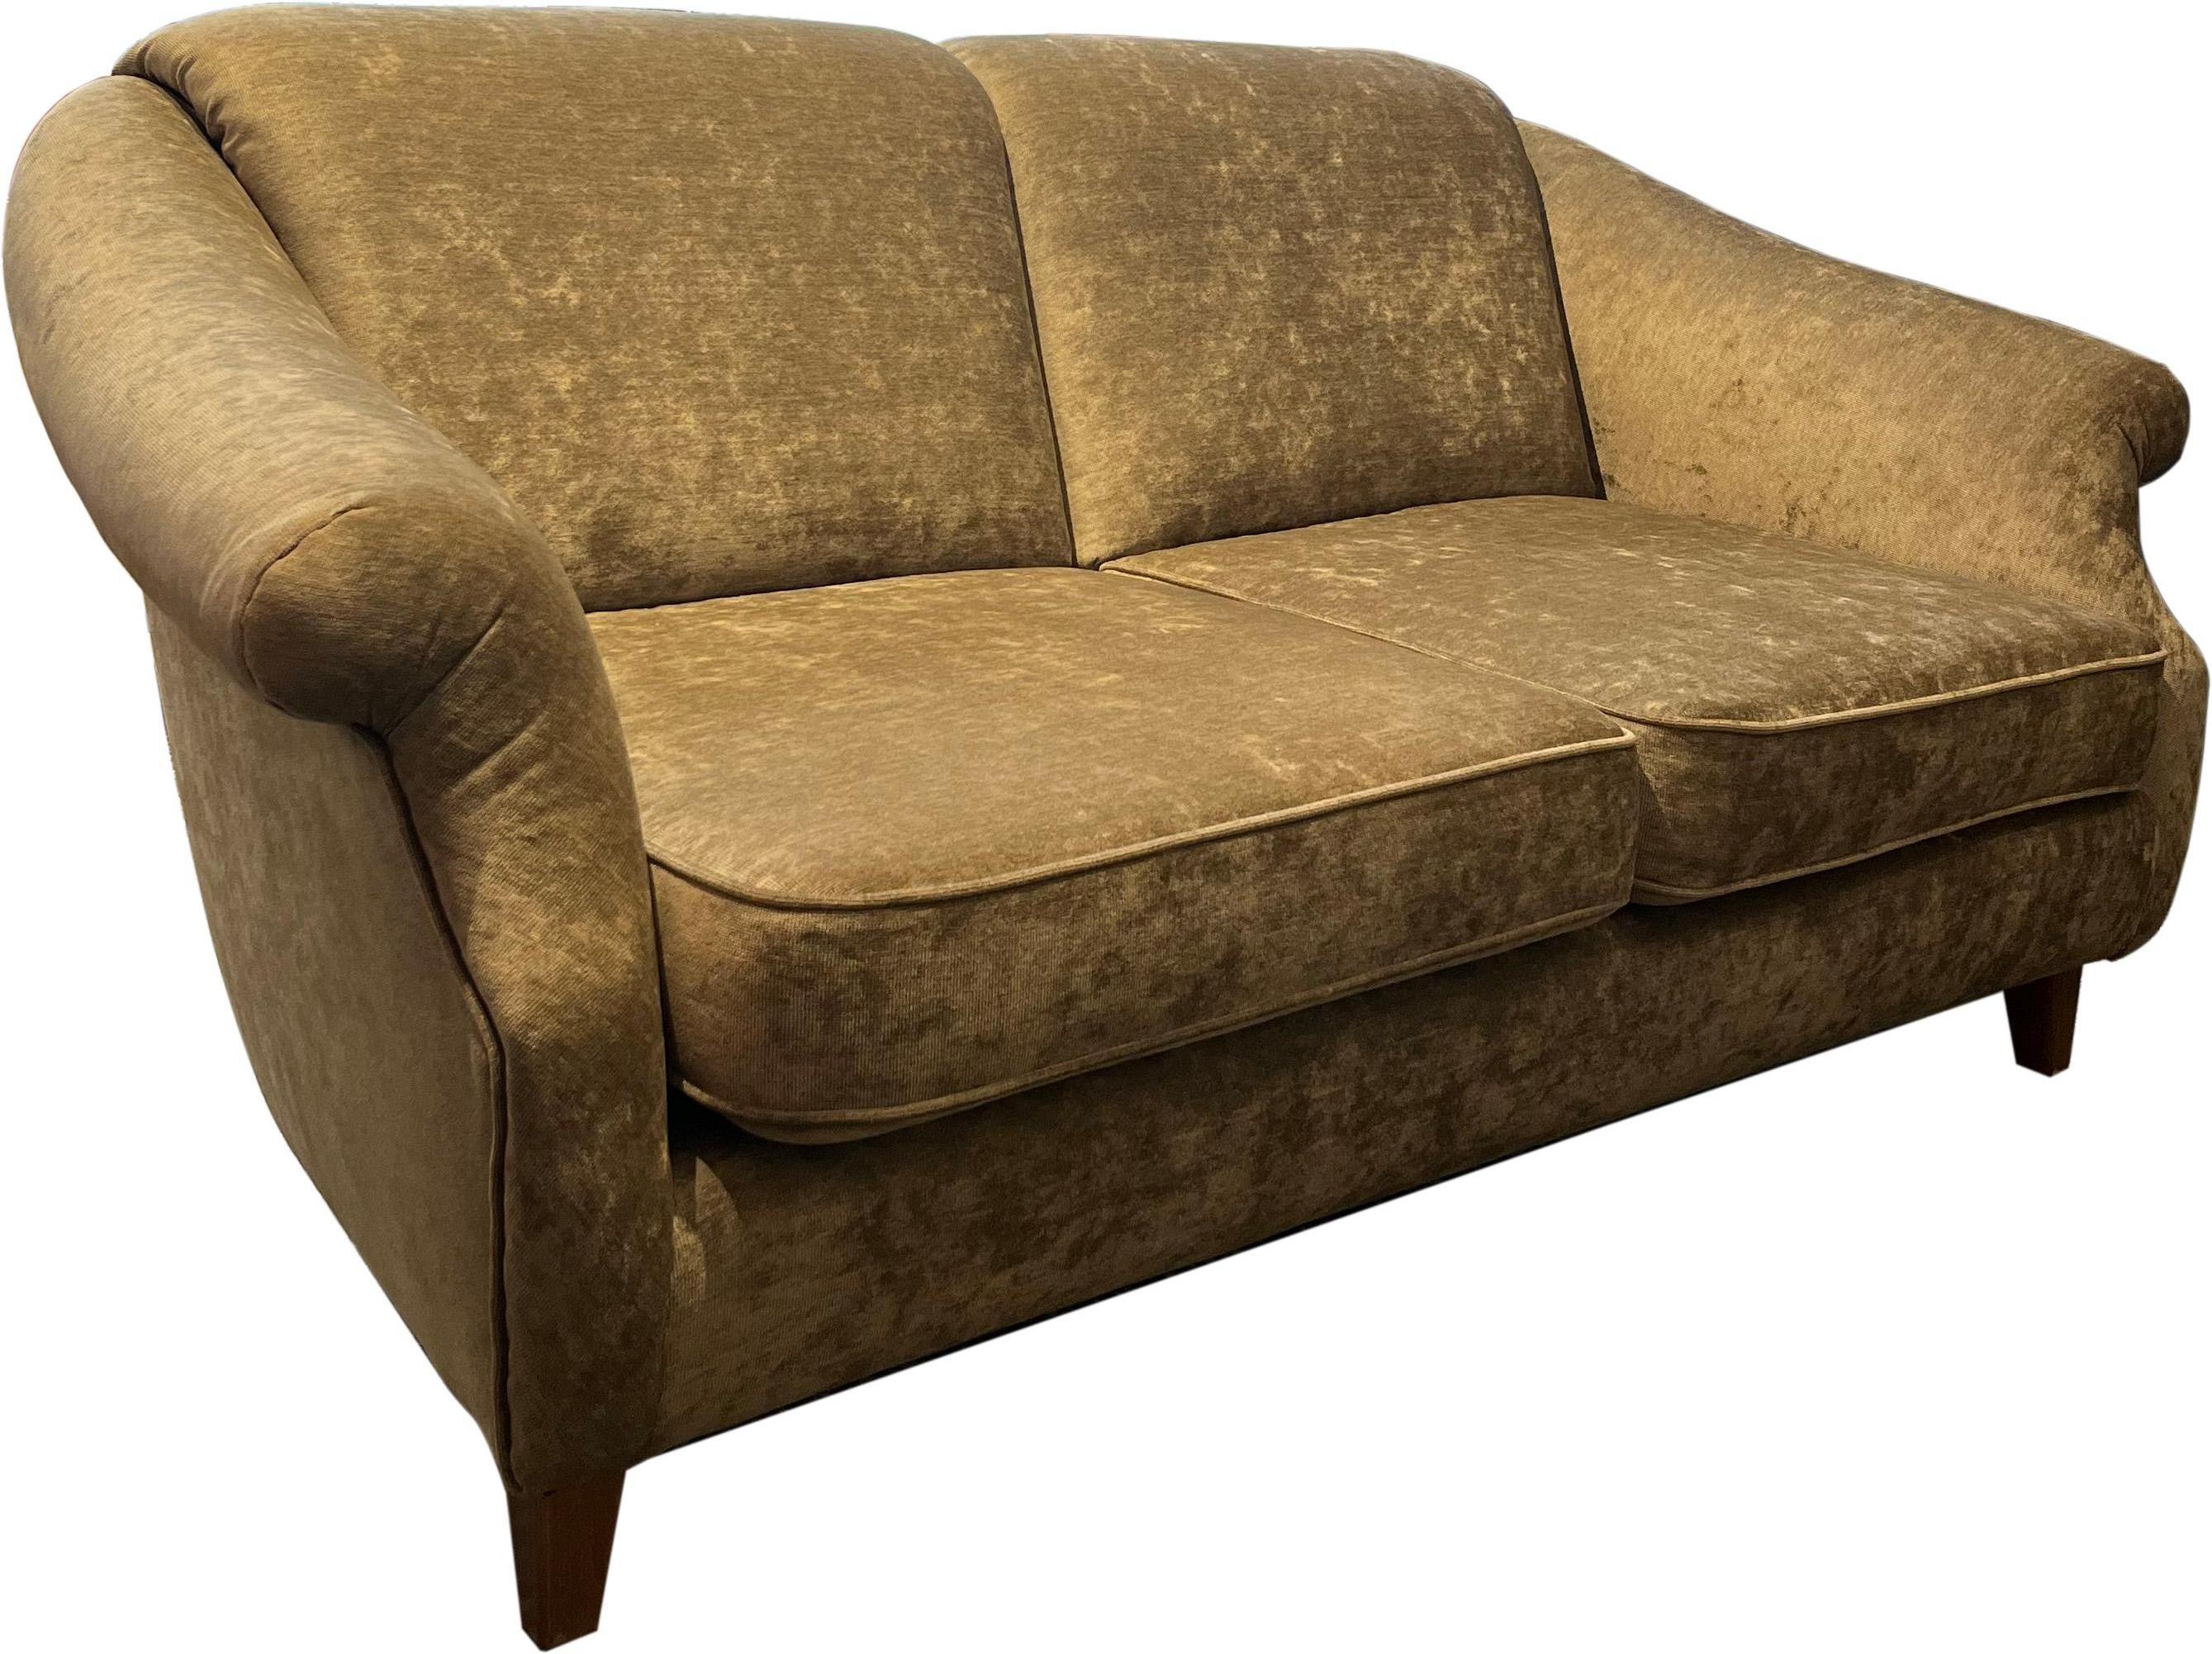 Dies ist ein 1960 dänischen Stil velor 2-Sitzer-Sofa. Der Designer ist uns nicht bekannt.